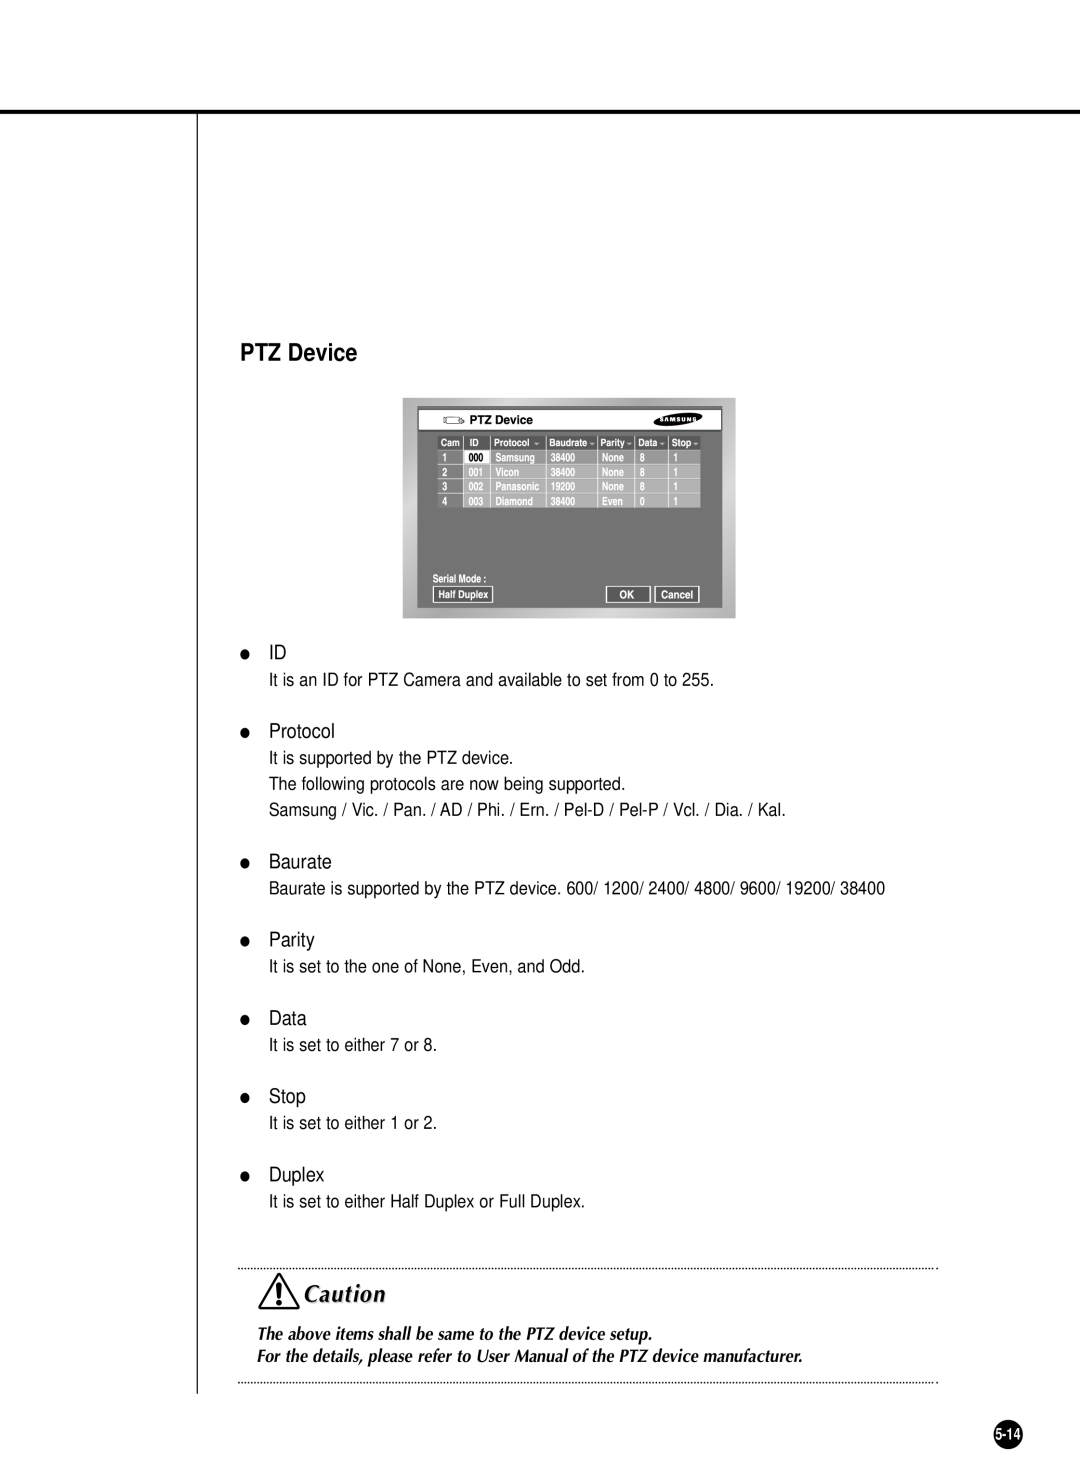 Samsung SHR-2040P/GAR, SHR-2042P, SHR-2040PX manual PTZ Device, The above items shall be same to the PTZ device setup 